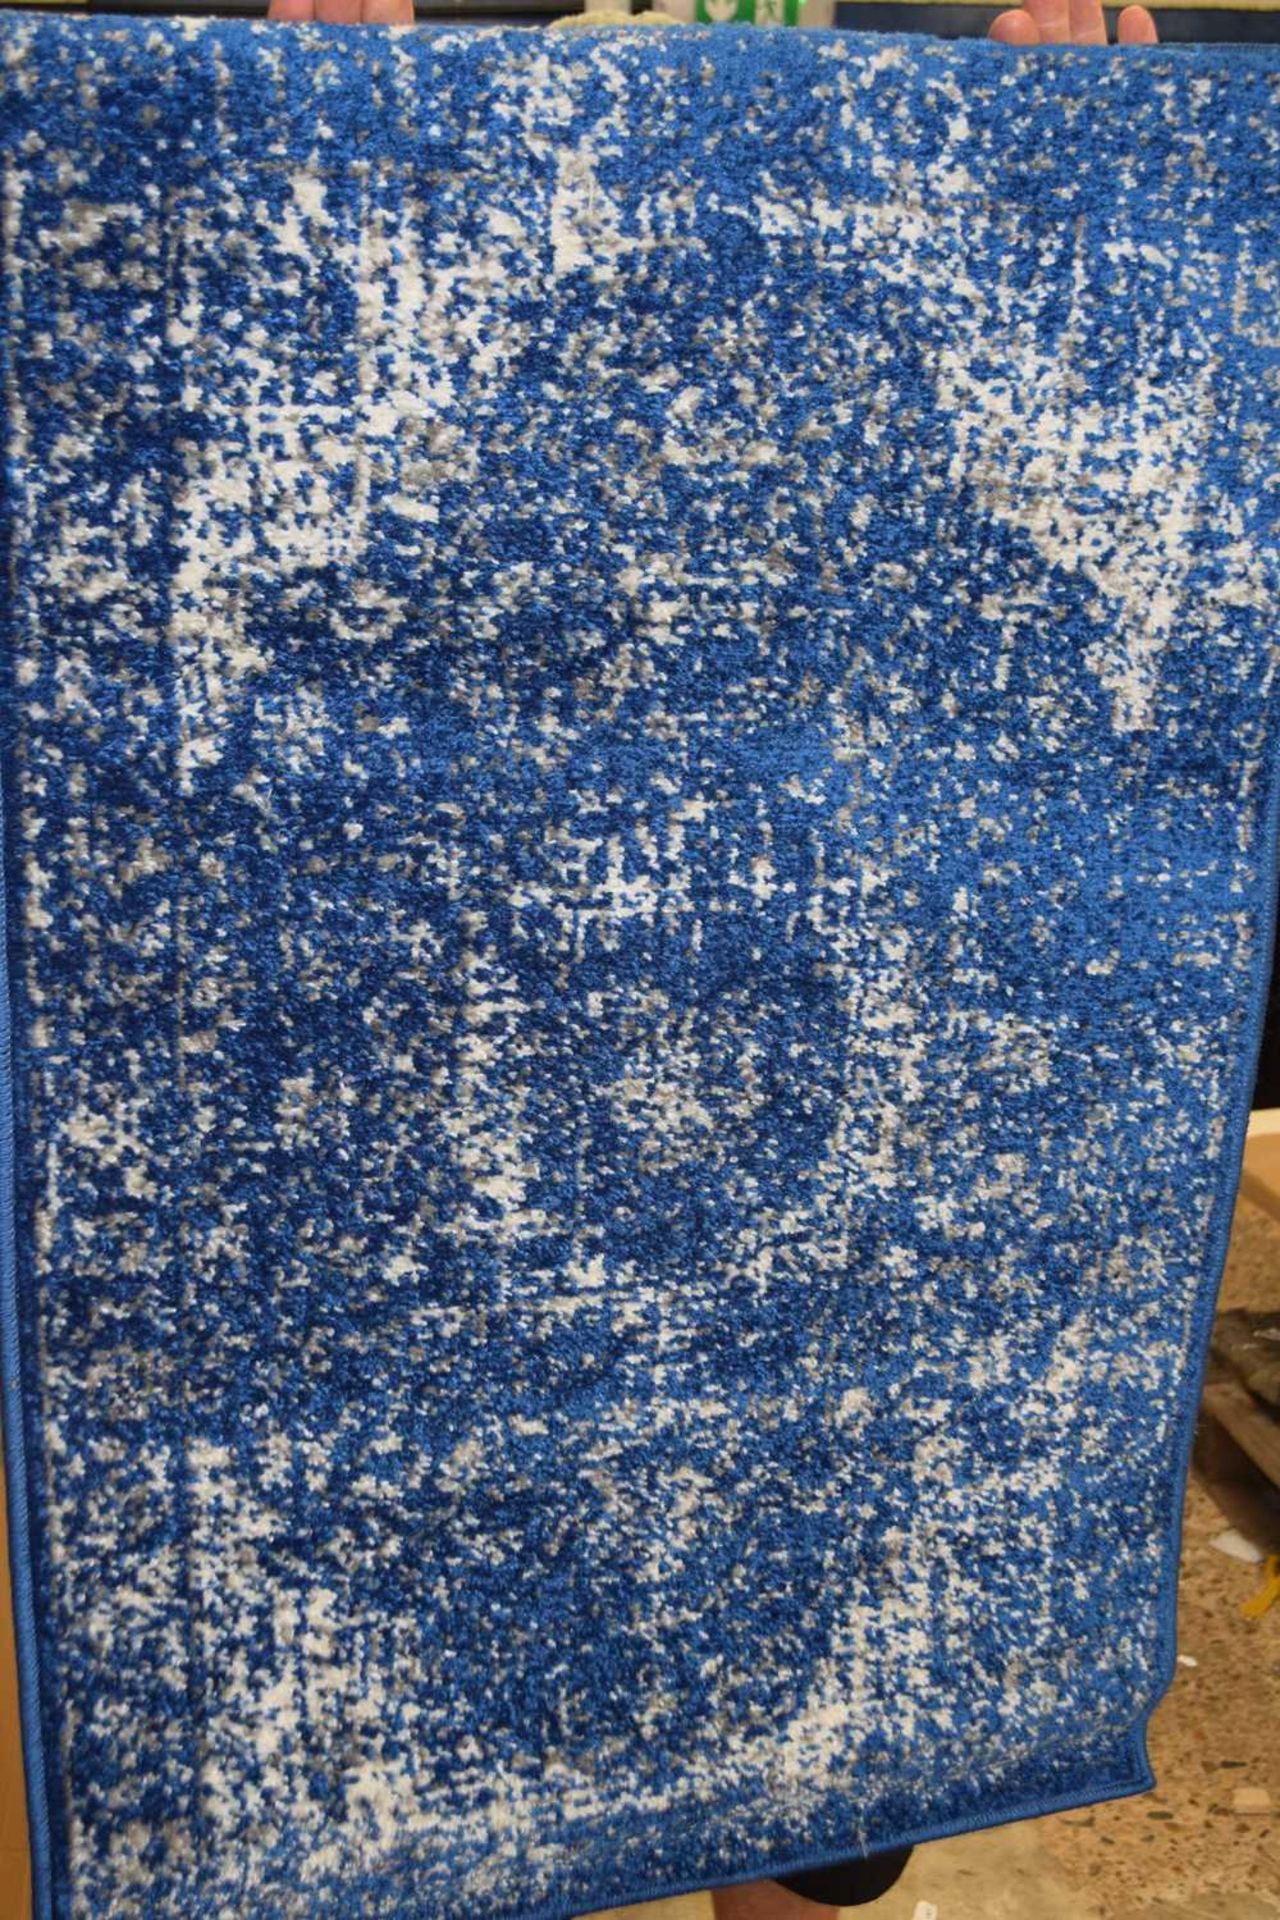 Bodrum dark blue floor rug, 2ft x 3ft